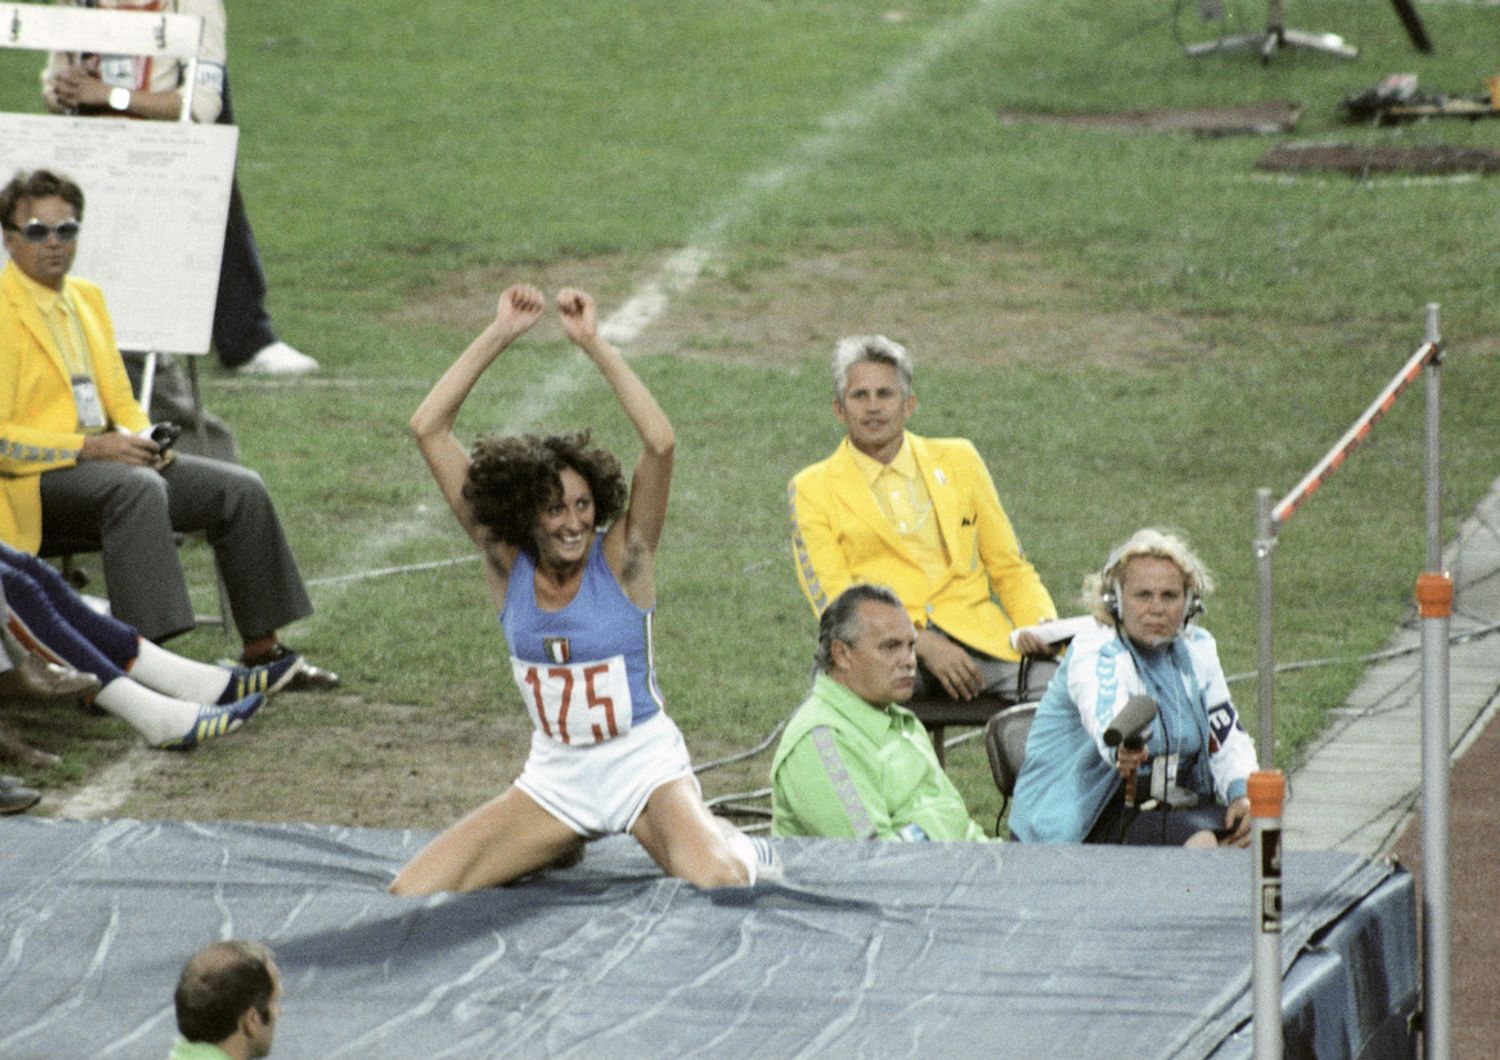 &nbsp;Sara Simeoni, Olimpiadi del 1980&nbsp;